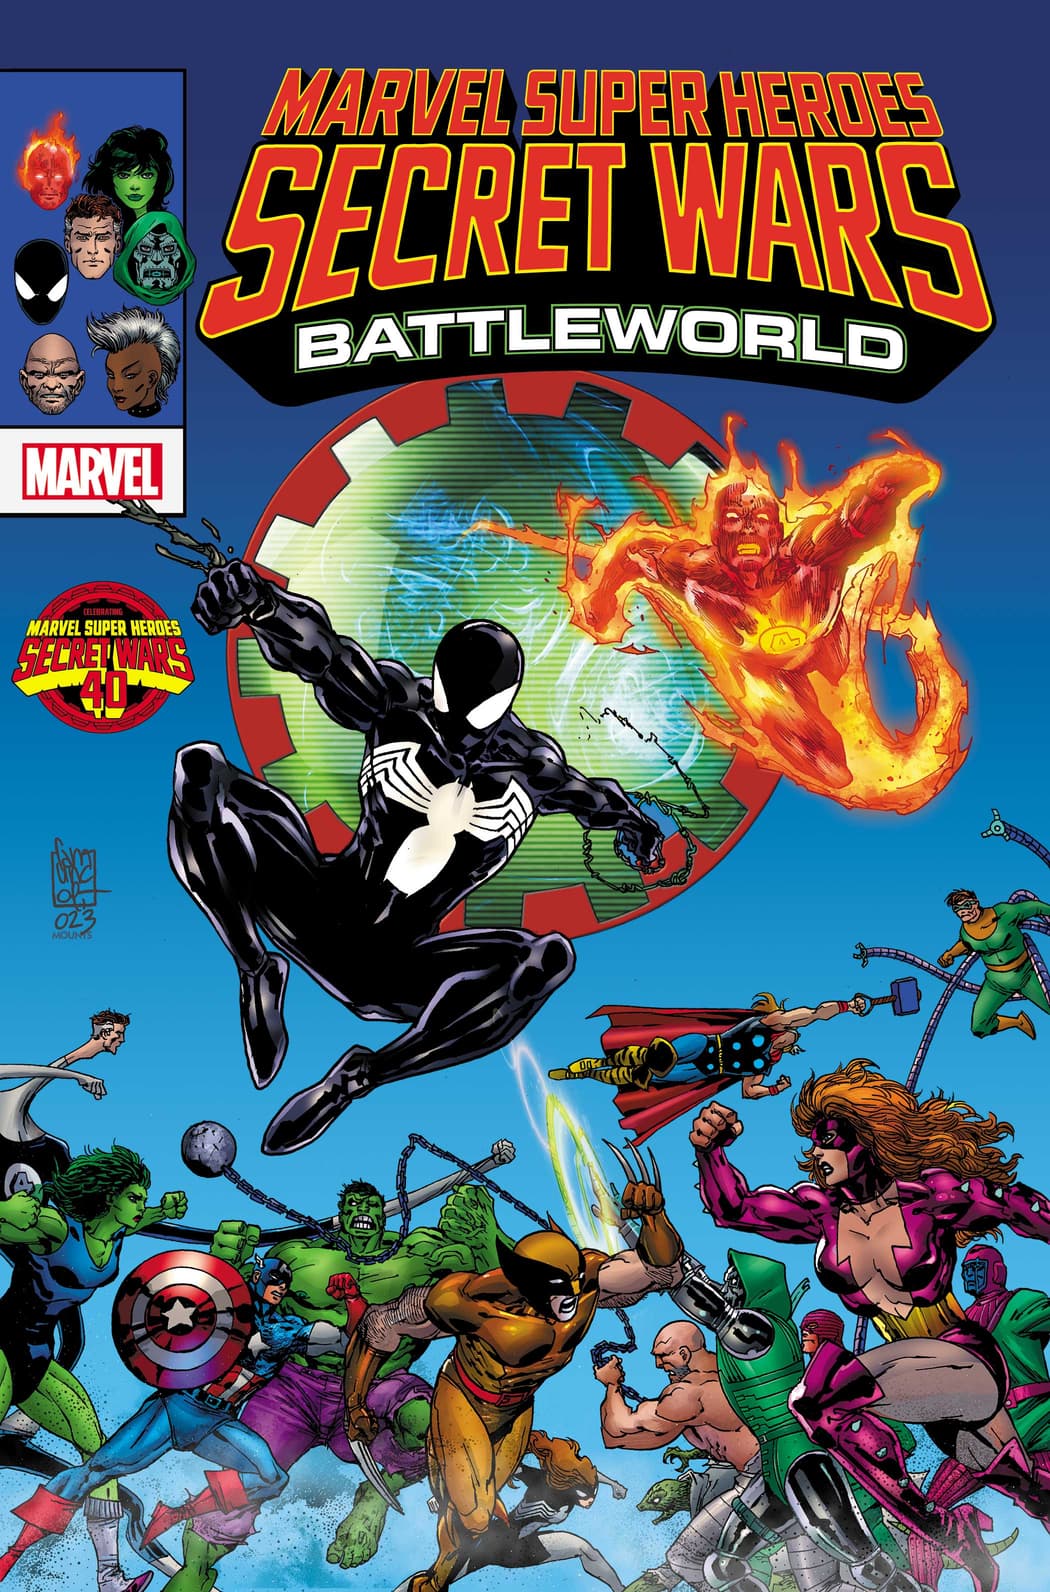 'Marvel Super Heroes Secret Wars: Battleworld'